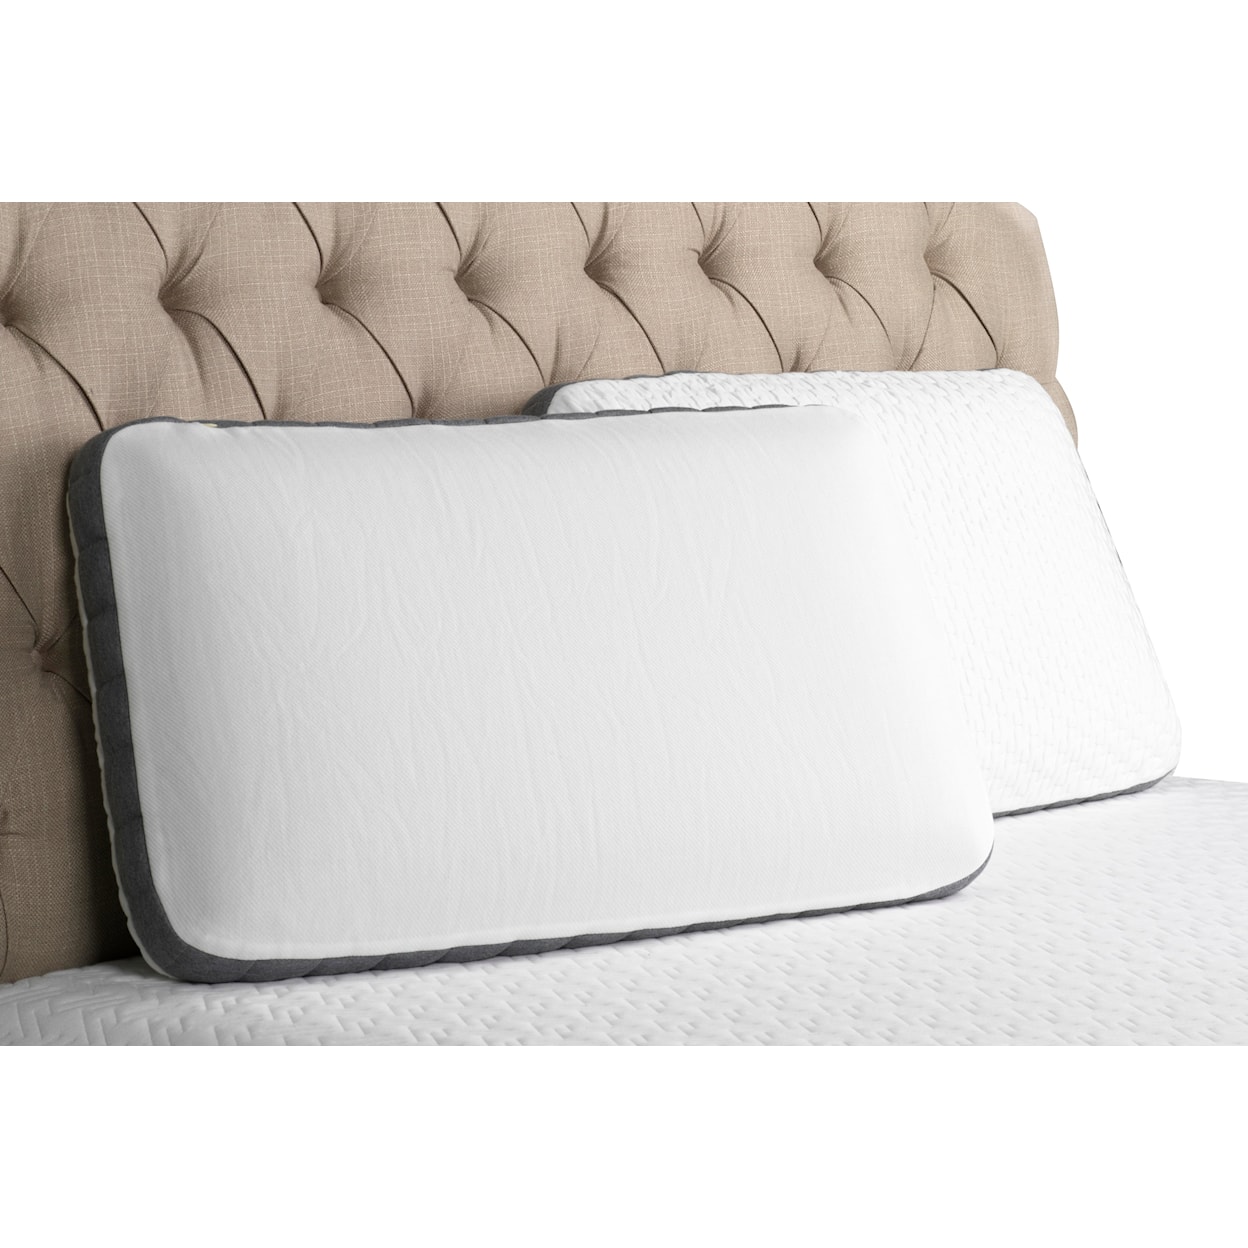 idealSLEEP South Bay International Queen Pillow